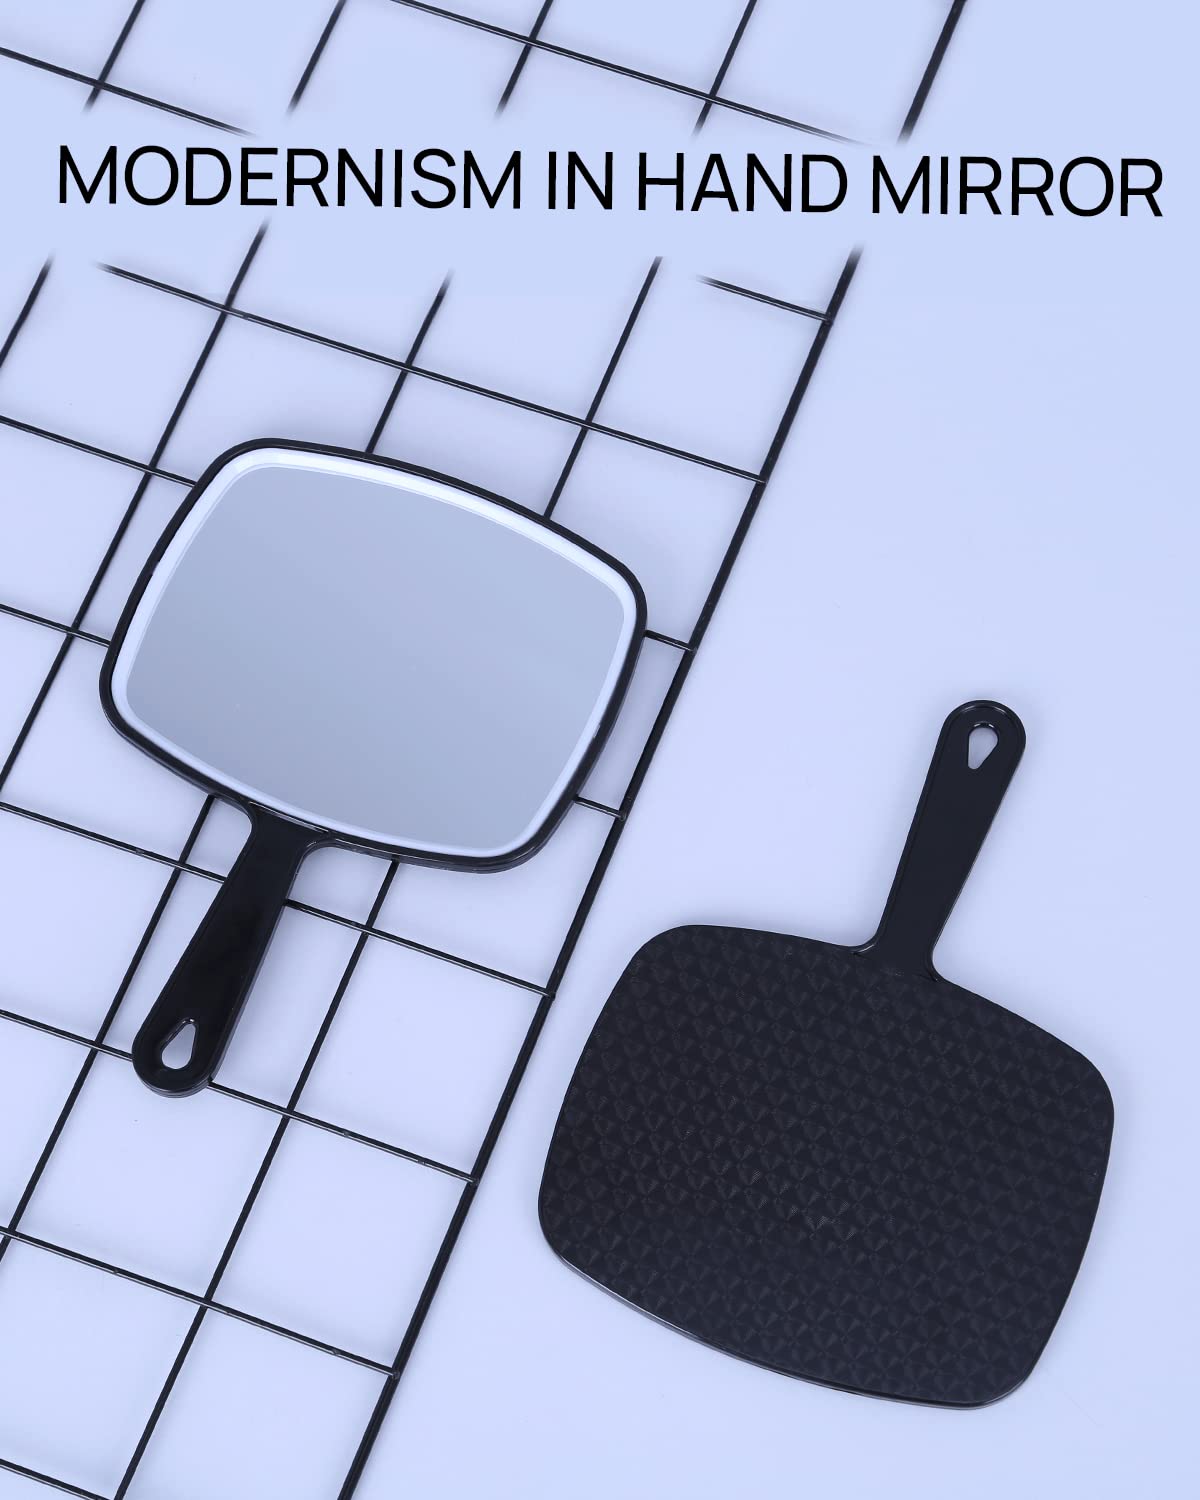 OMIRO håndspejl, ekstra stort sort håndholdt spejl med håndtag, 9" B x 12,4" L